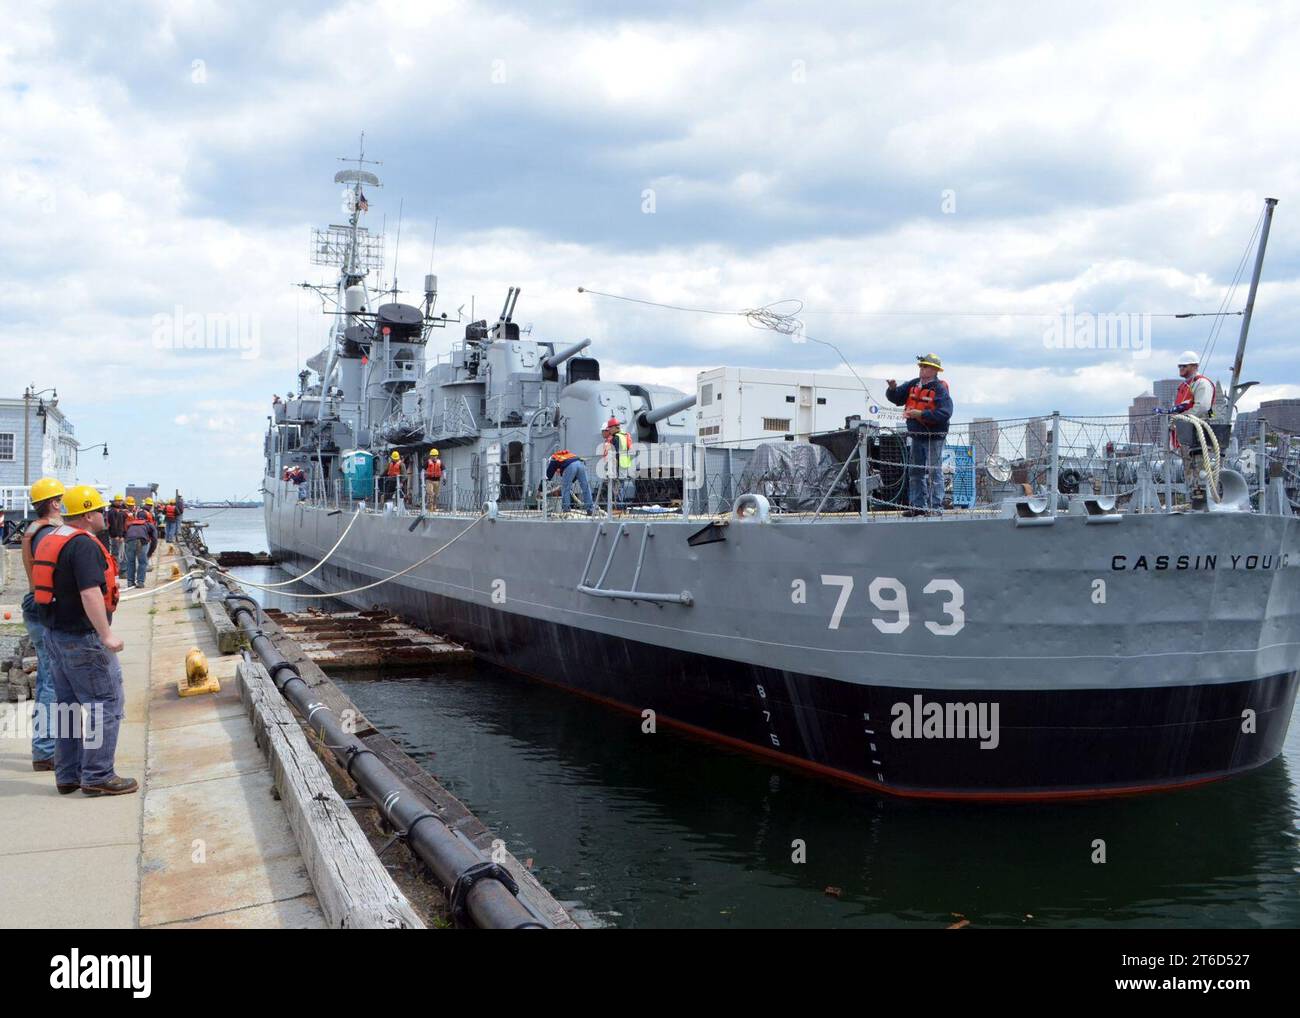 USS Cassin Young amarrage au chantier naval de Charlestown. (8793138297) Banque D'Images